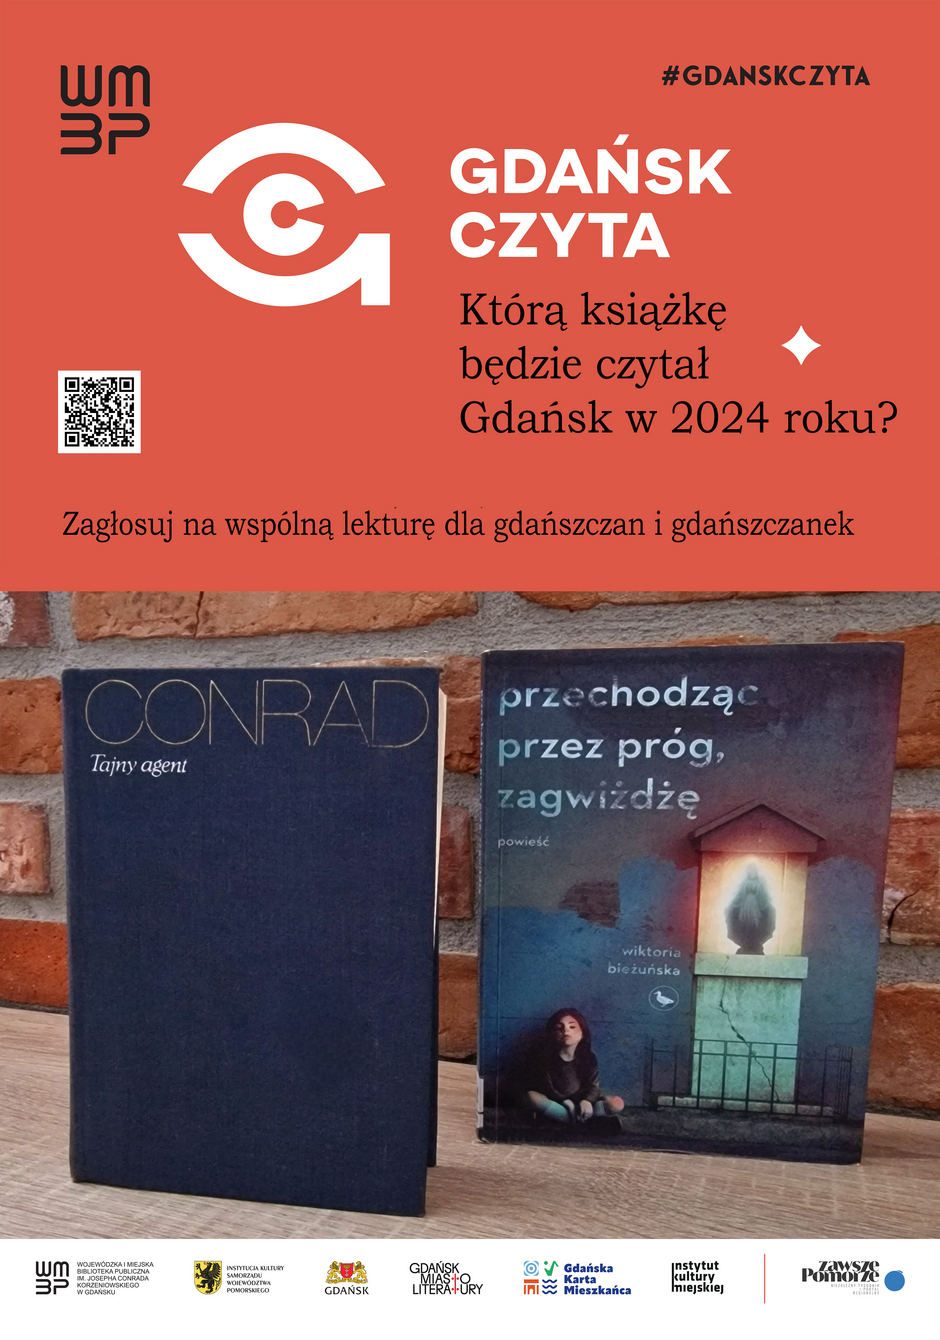 Na plakacie znajduje się informacja o inicjatywie „GDAŃSK CZYTA”, która zachęca do głosowania na wspólną lekturę dla mieszkańców Gdańska w roku 2024. Widoczne są dwie książki, zatytułowane „CONRAD. Tajny agent” i „przechodząc przez próg, zagwiżdżę” autorstwa Wiktorii Bieńkuńskiej, obok których umieszczono pytanie o to, którą książkę będą czytać mieszkańcy Gdańska w nadchodzącym roku, a także hashtag #gdanskczyta oraz kody QR i logotypy sponsorów i organizatorów akcji.